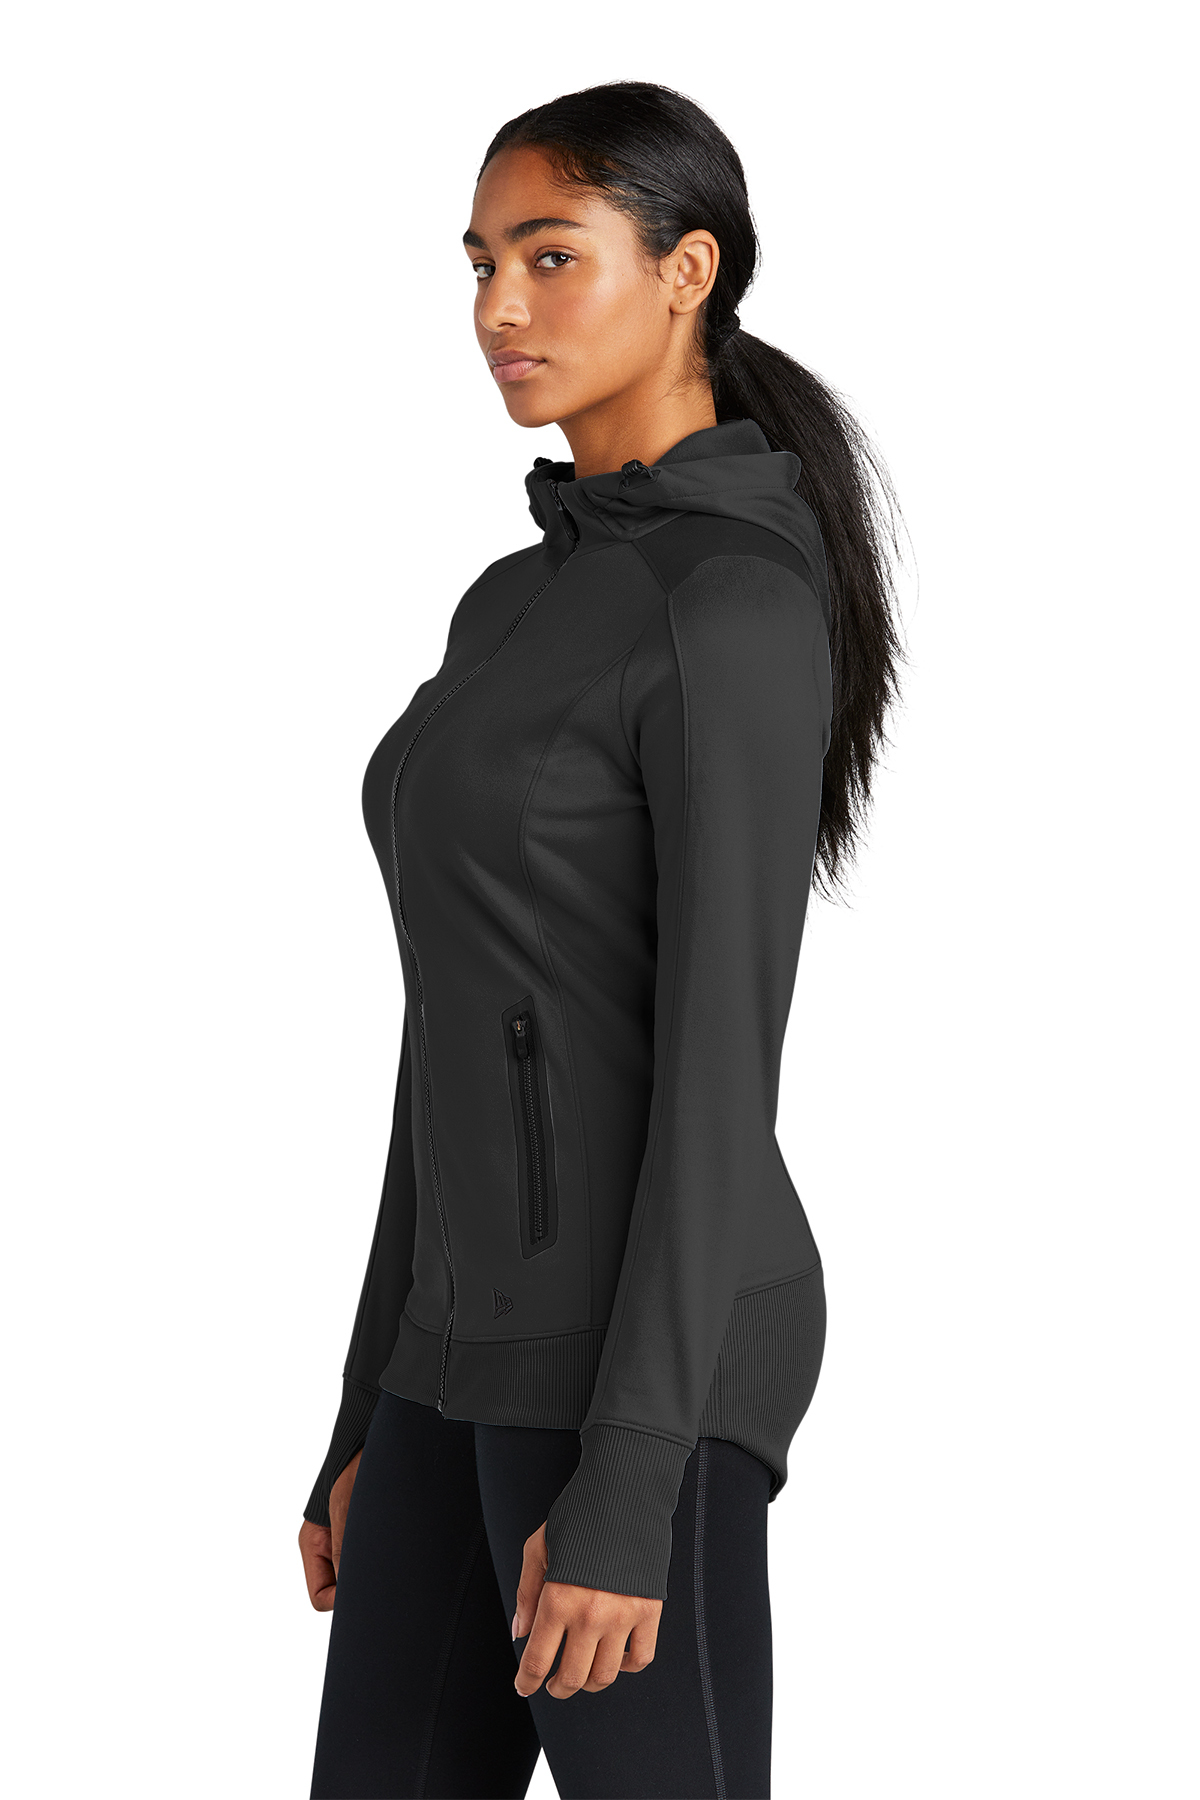 New Era Ladies Venue Fleece Full-Zip Hoodie | Product | Company Casuals